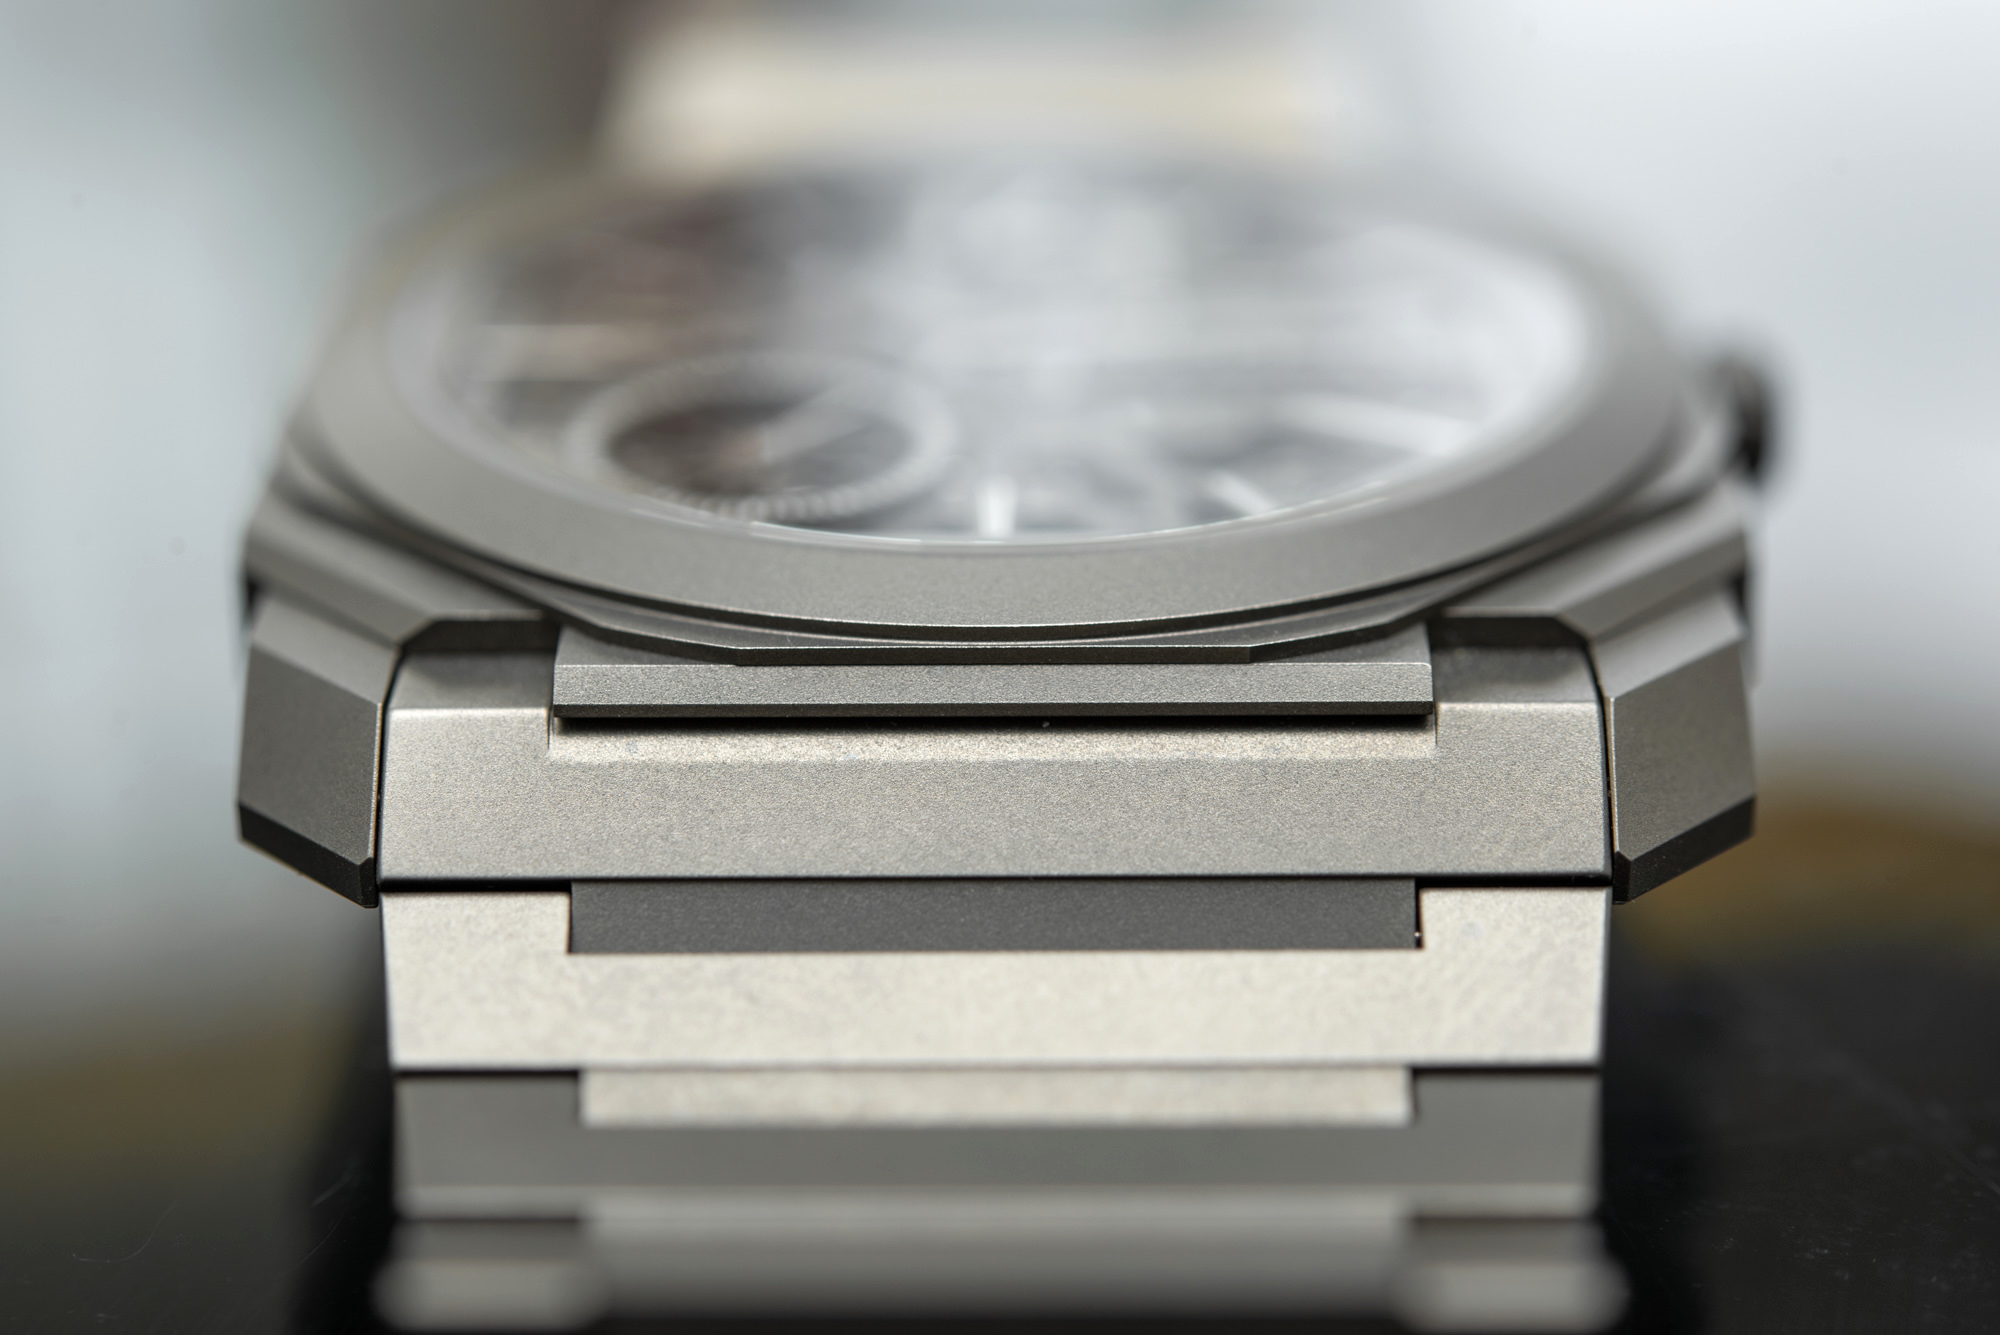 宝格丽Octo Finissimo系列103610腕表如何-超薄款手表推荐